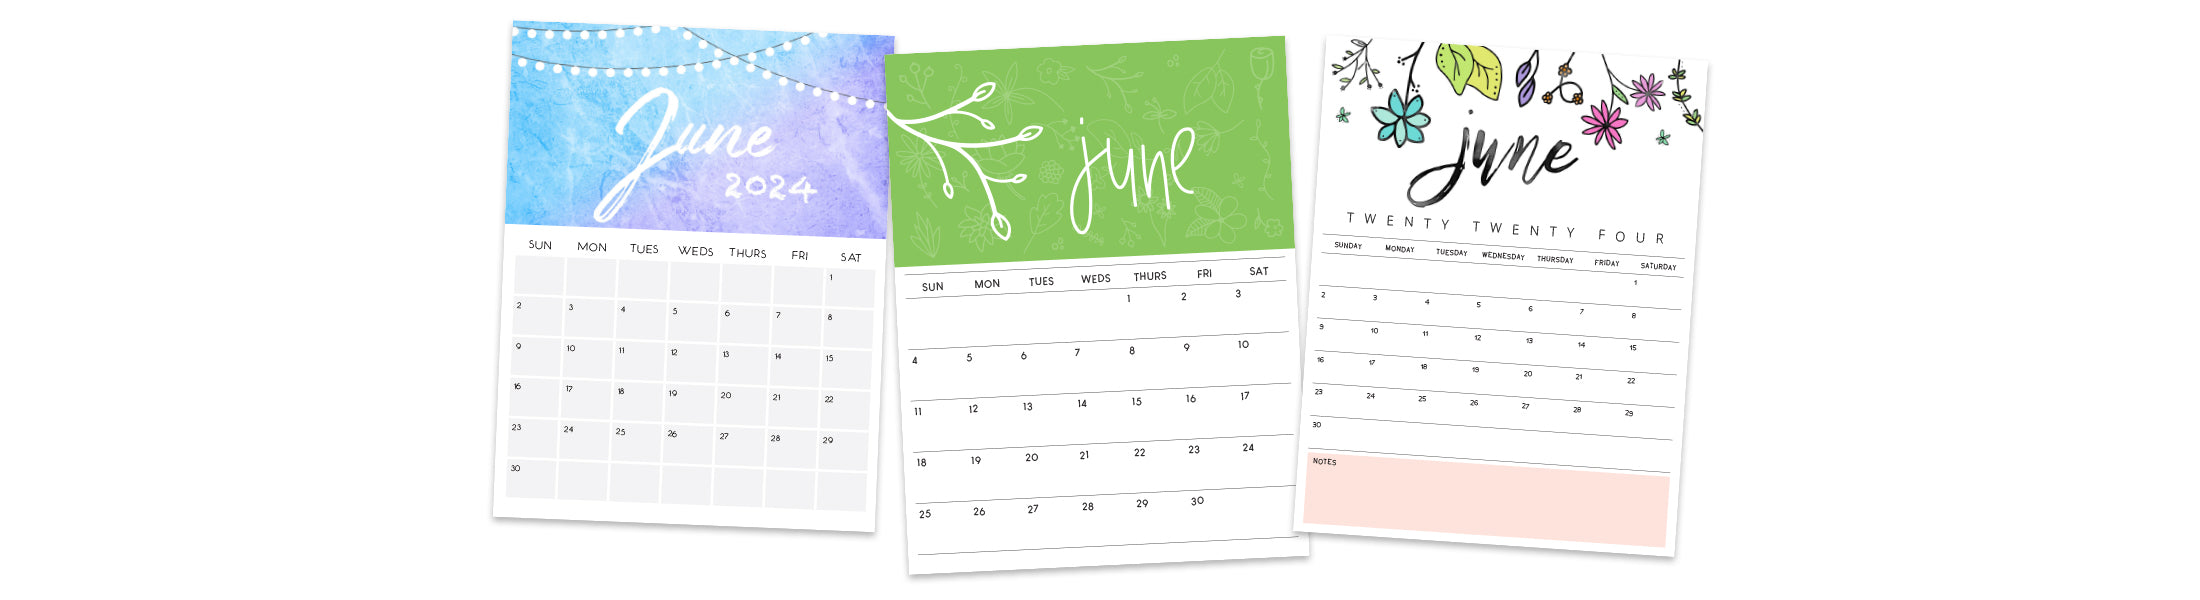 june 2024 printable calendars